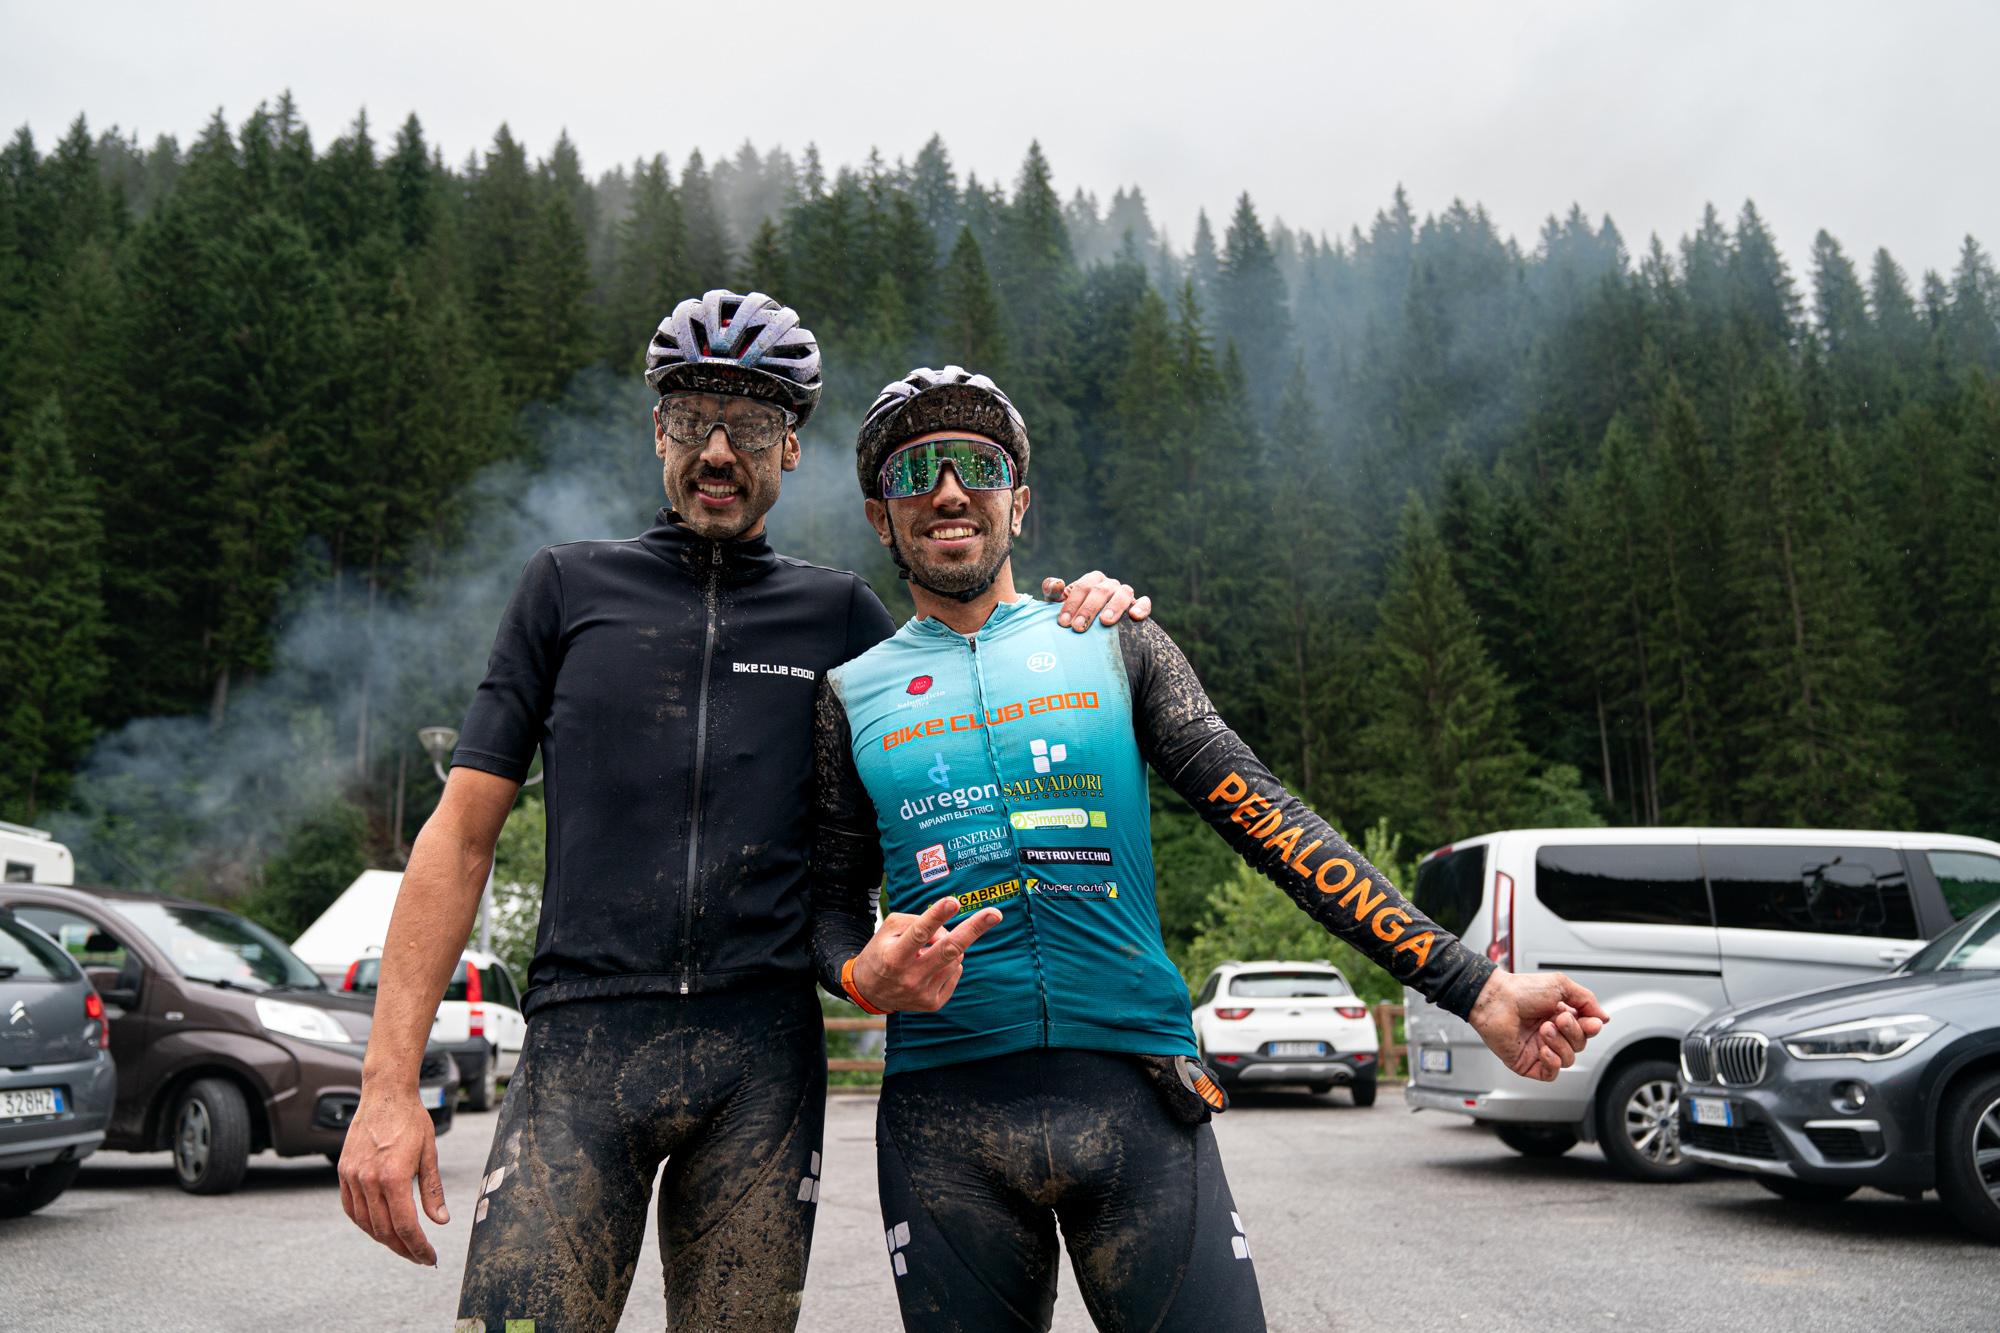 "Pedalonga" mountain bike race in the Italian Alps